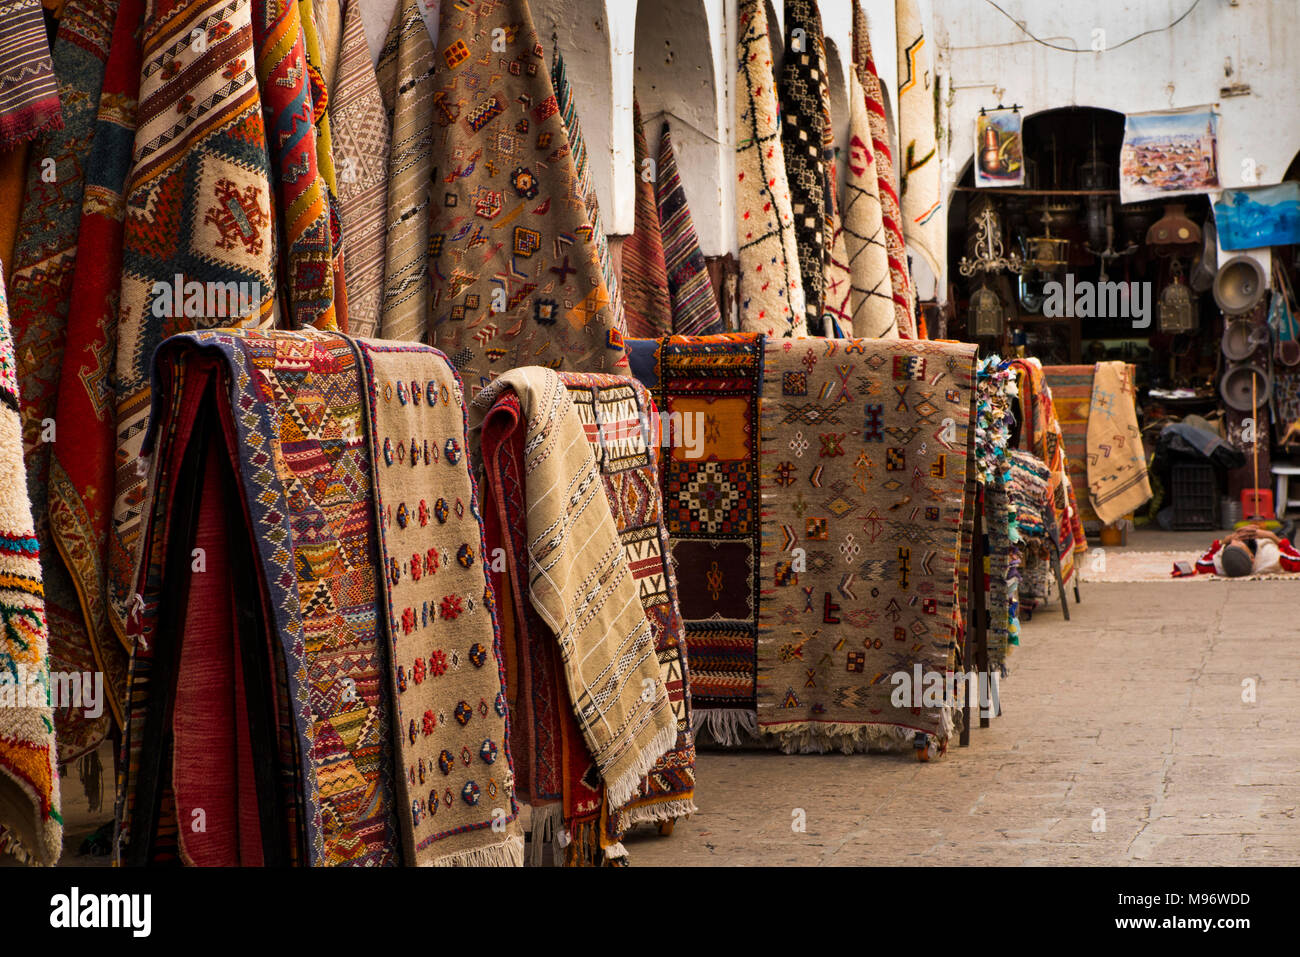 Maroc, Casablanca, Quartier Habous, Souk des tapis, des kilims berbères et des textiles tissés sur l'affichage Banque D'Images